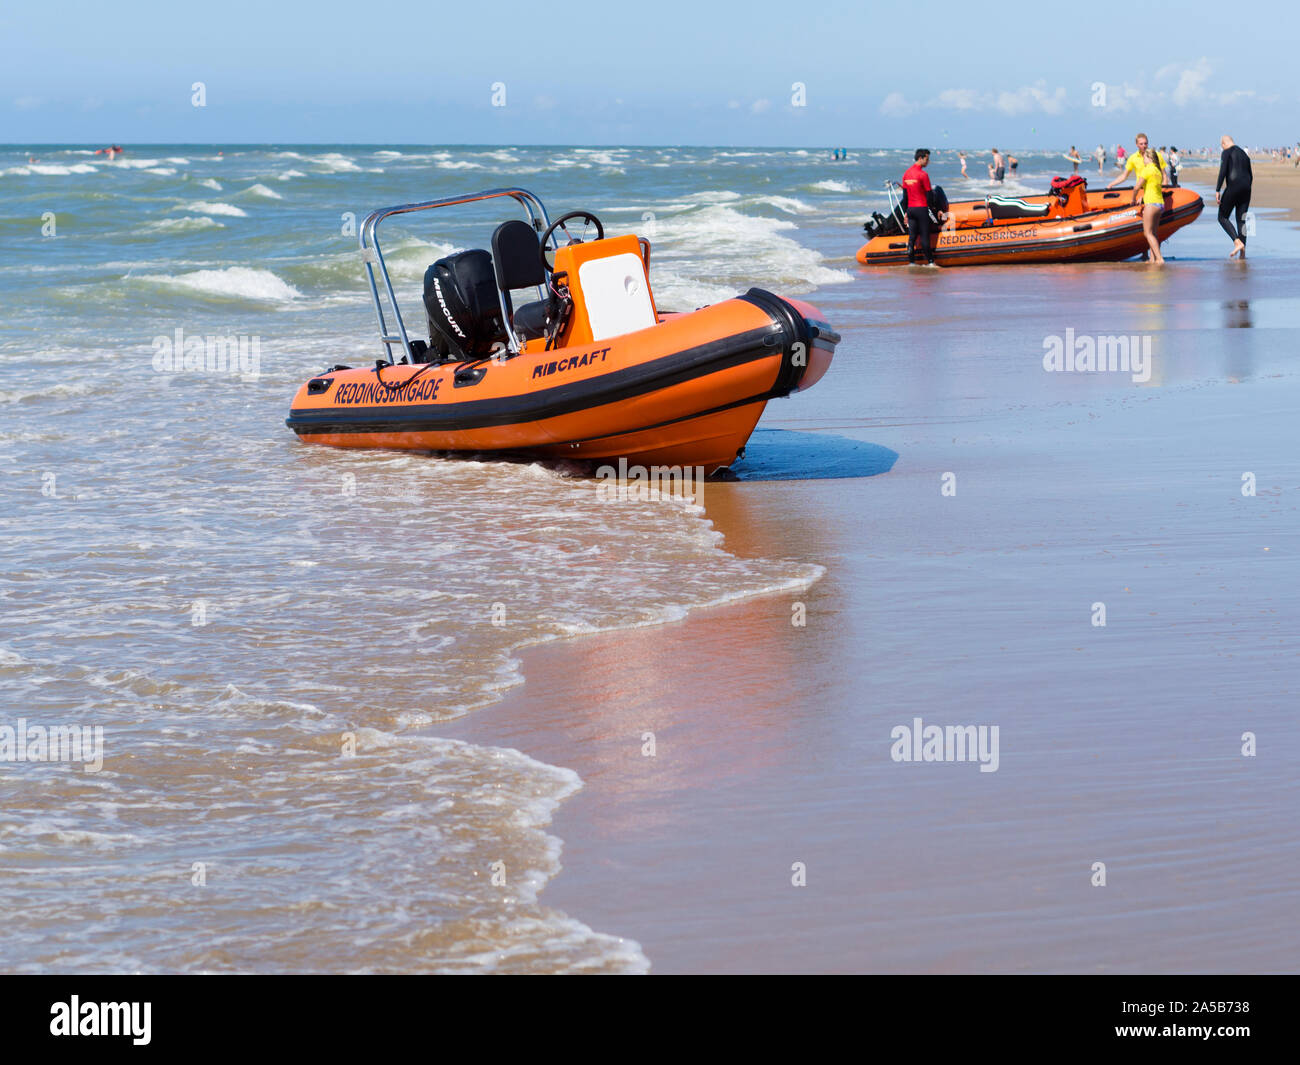 Katwijk, Niederlande - 22 Juli 2015: Aufblasbare Motorboote der Niederländischen bay watch/Rettungsschwimmer Brigade ('Reddingsbrigade') an einem Strand der Nordsee Stockfoto